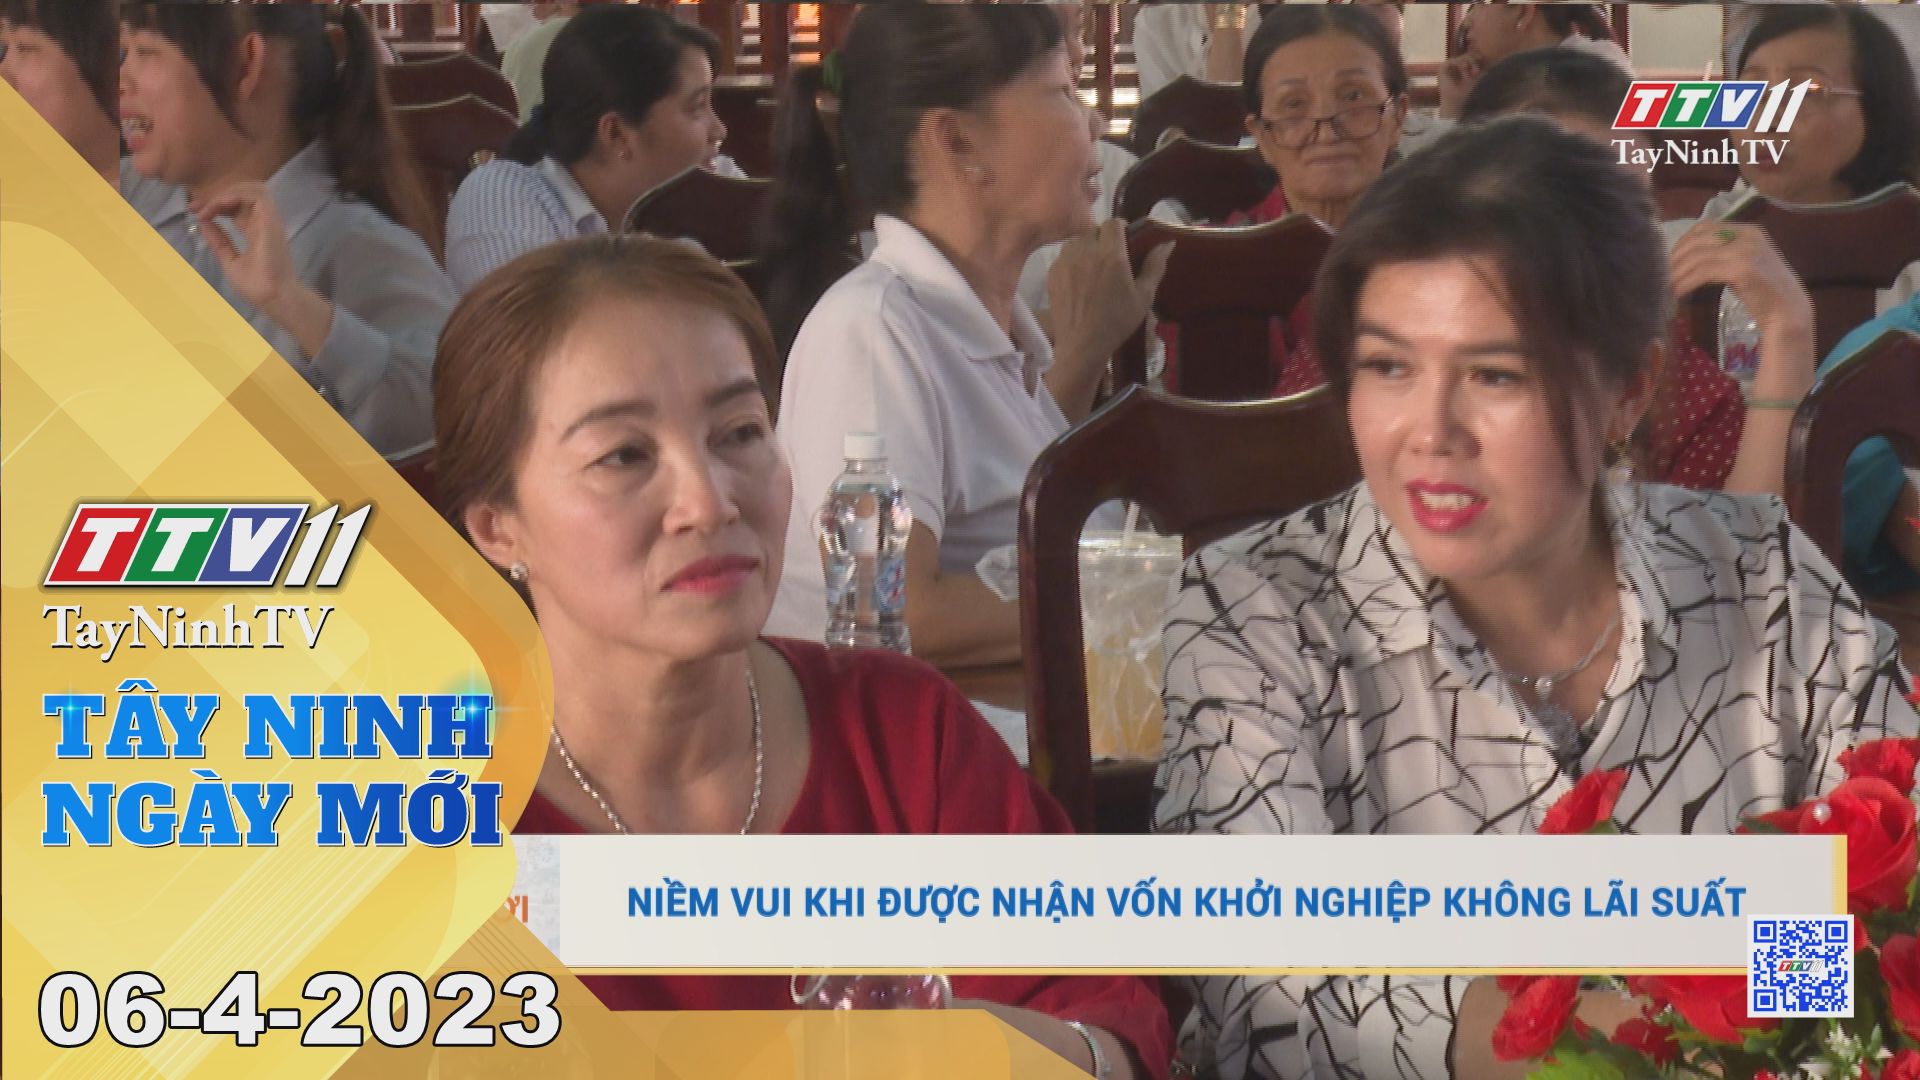 Tây Ninh ngày mới 06-4-2023 | Tin tức hôm nay | TayNinhTV